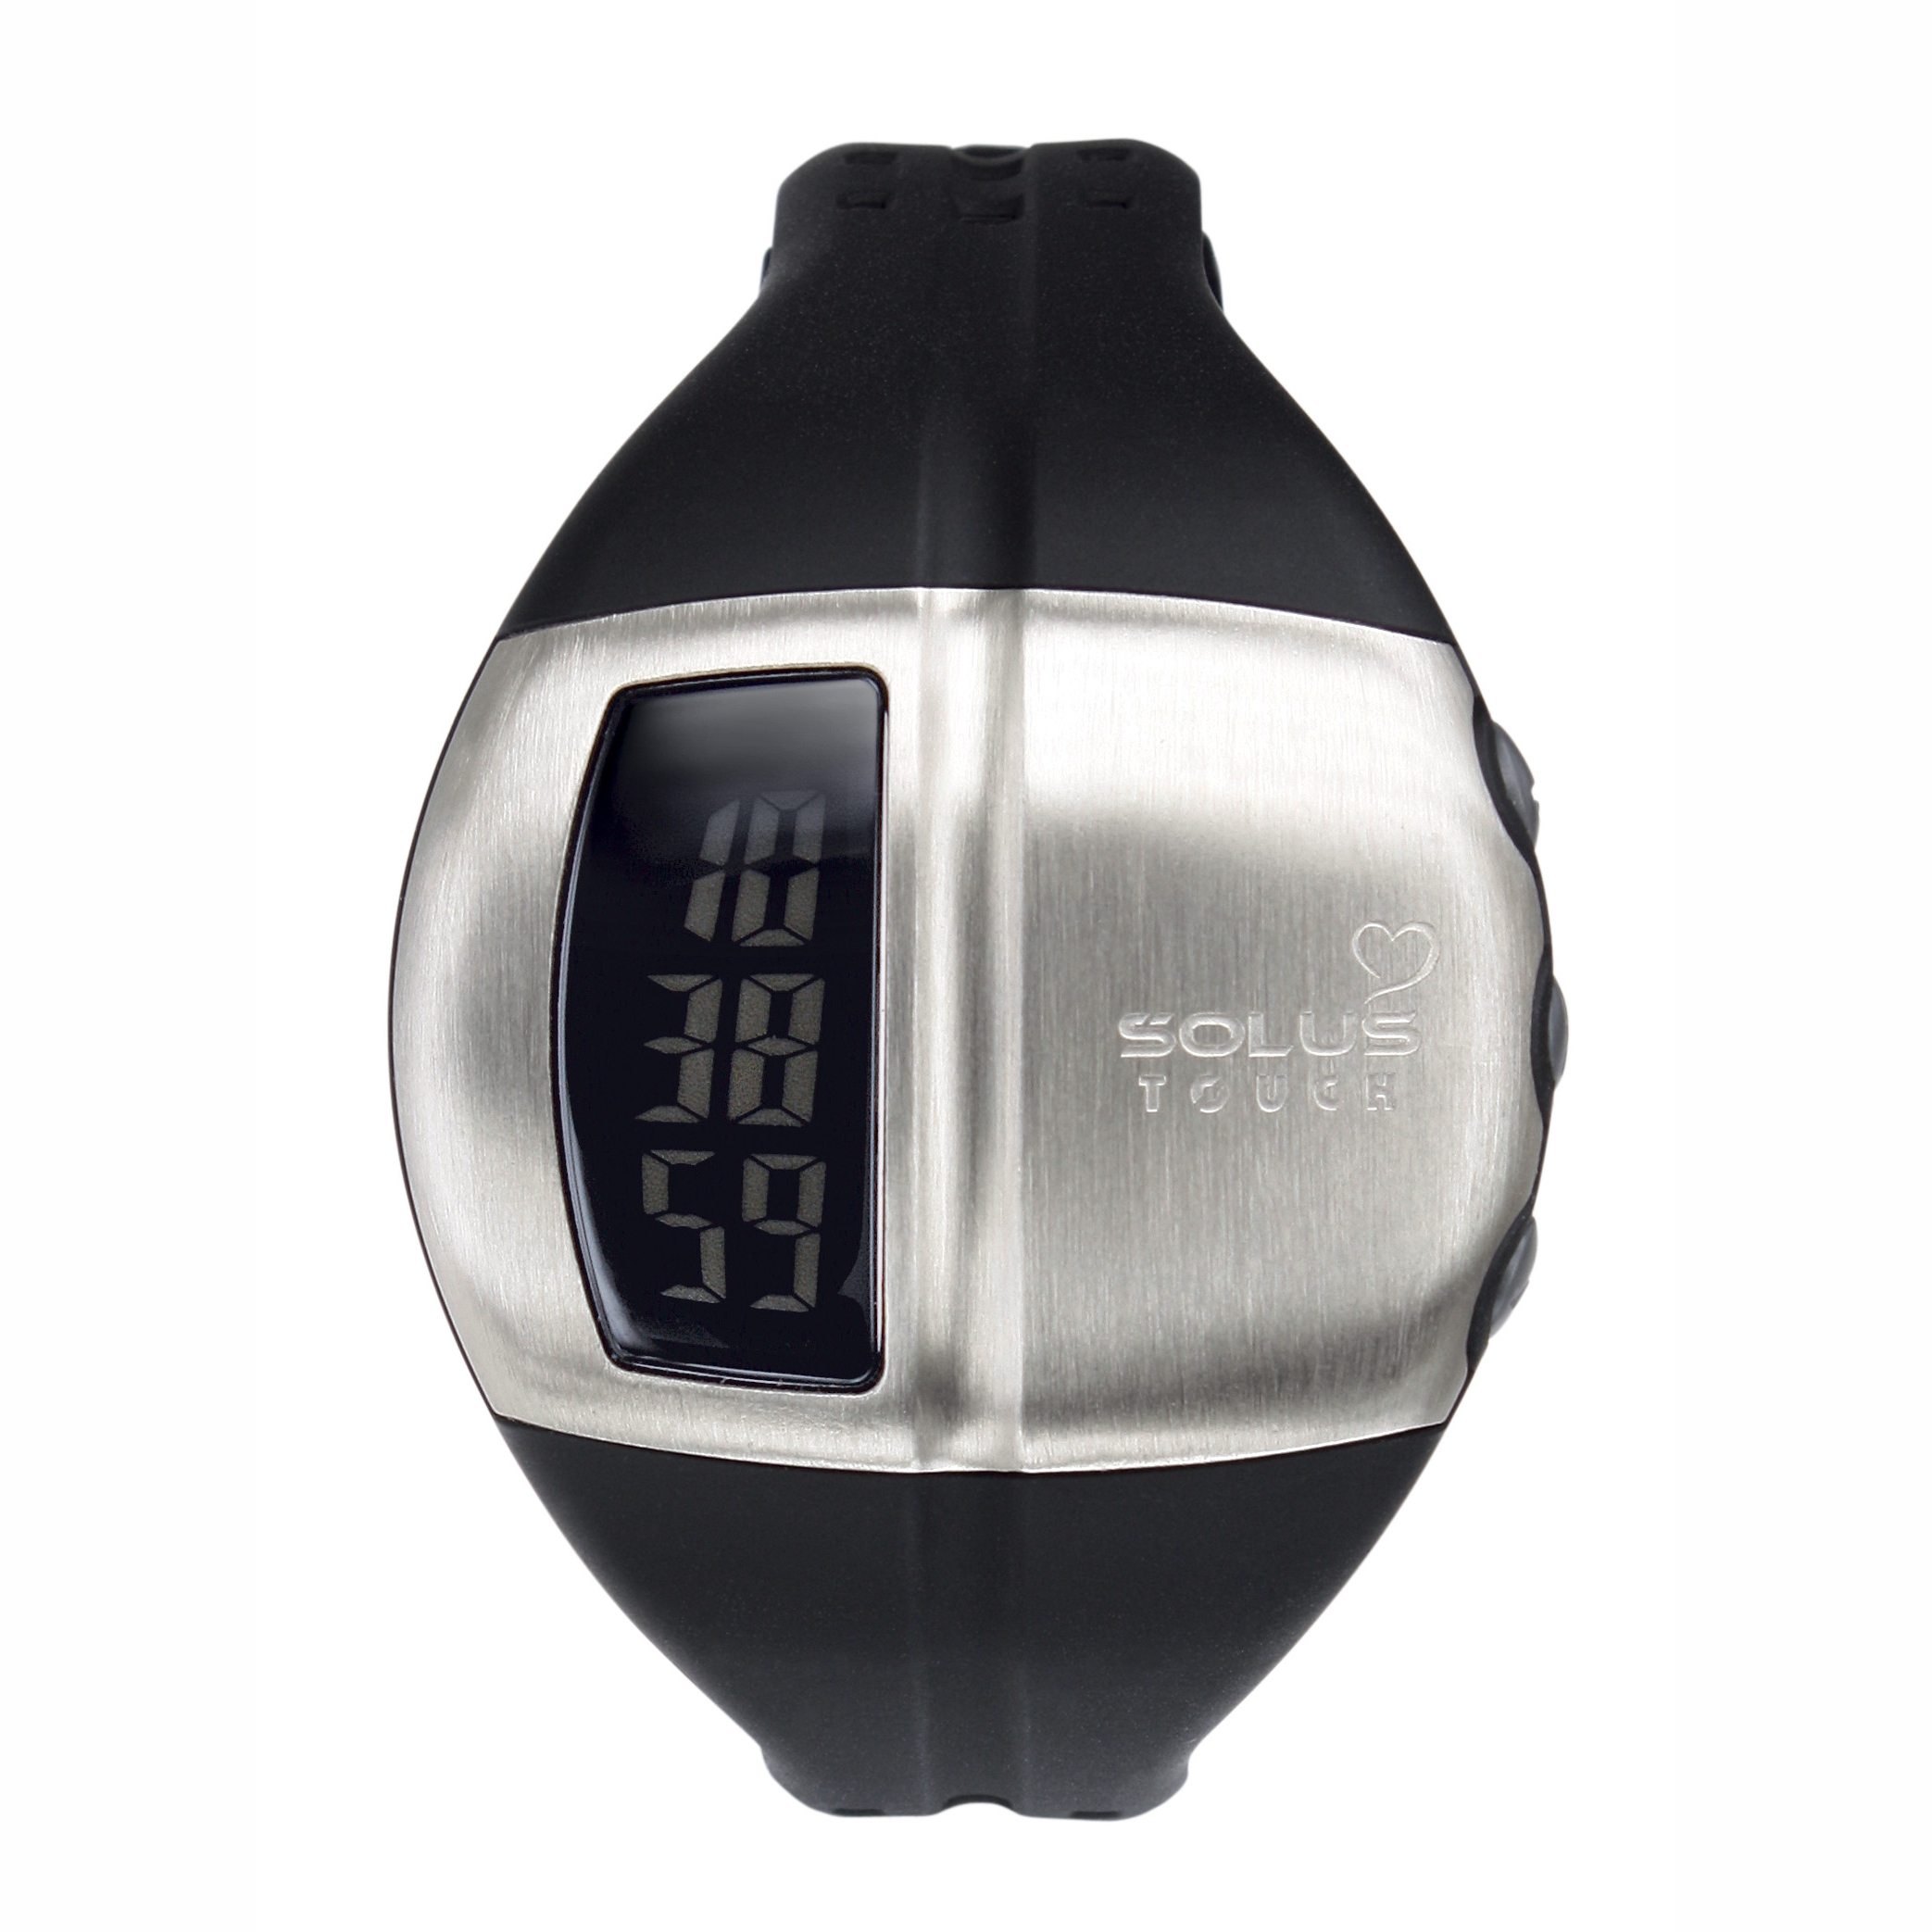 Solus 01-810-001